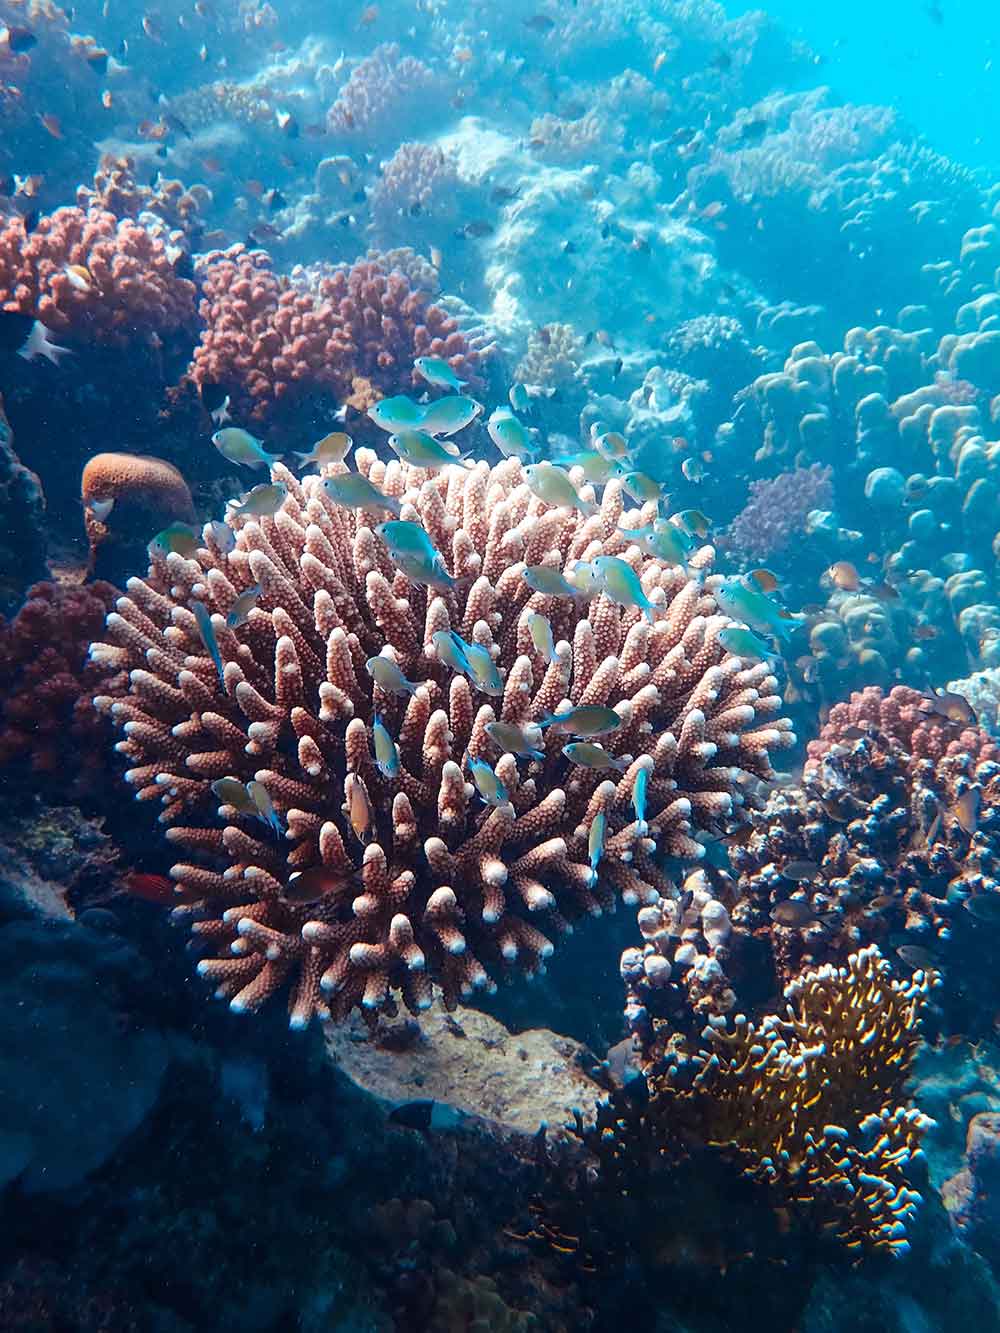 PDP 个人全能发展计划之三亚西岛“海底雨林”珊瑚礁科考行动